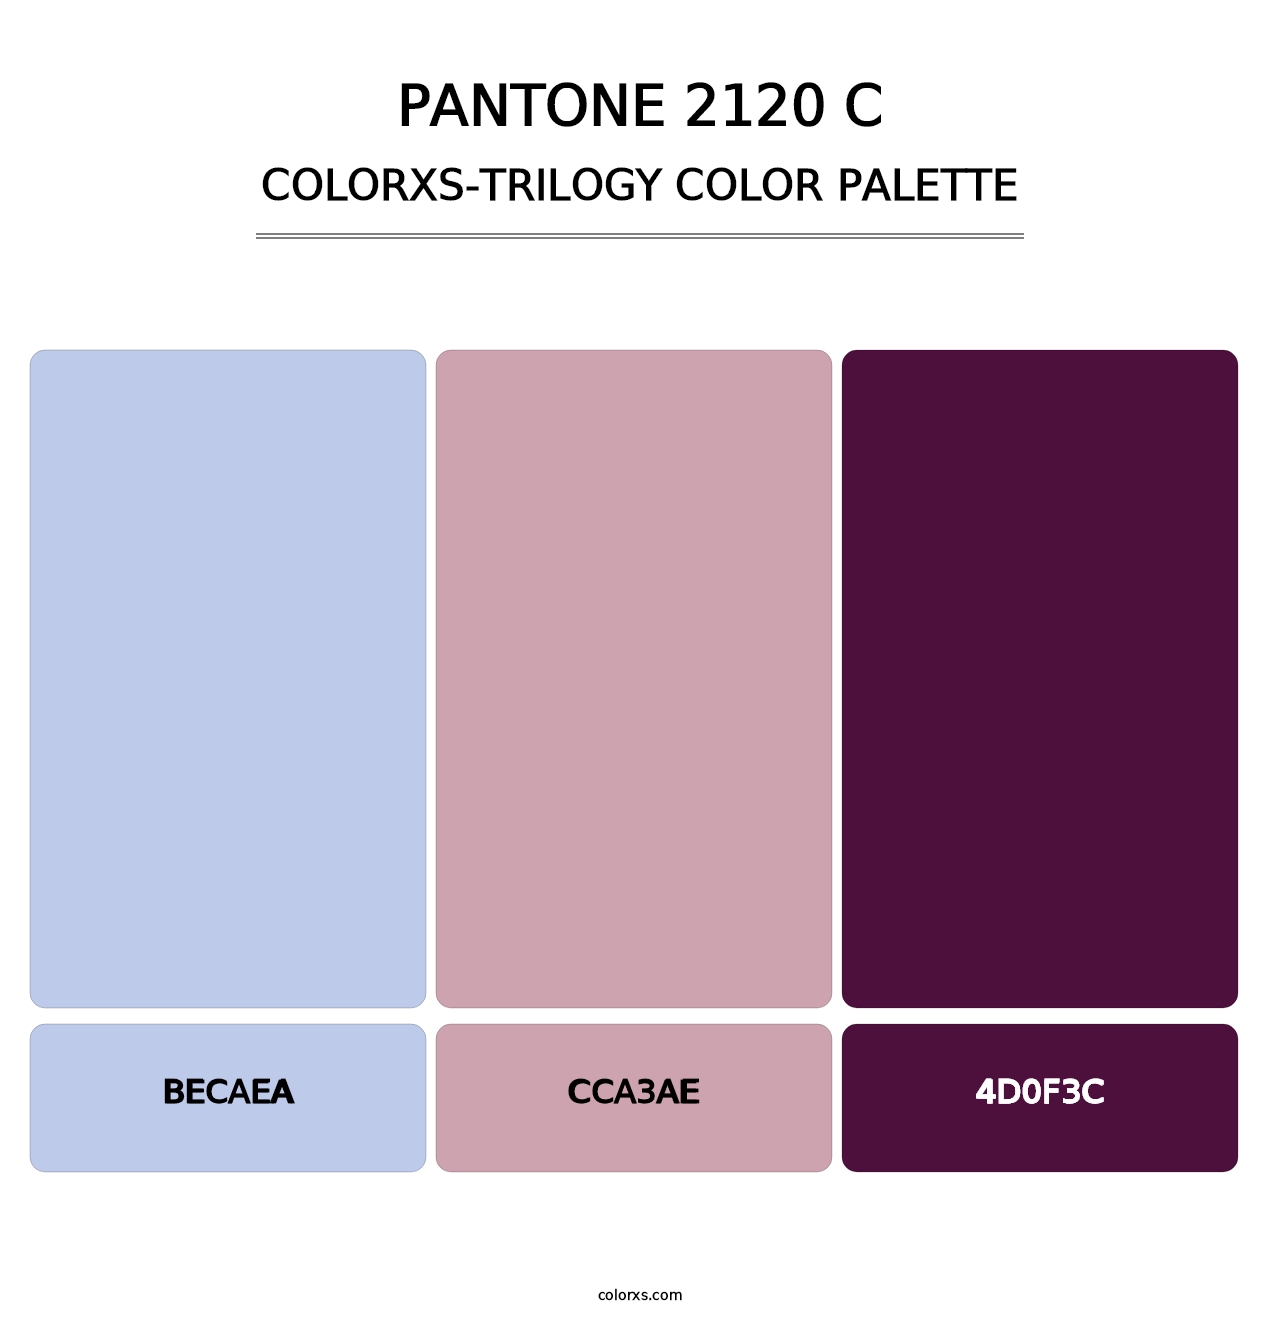 PANTONE 2120 C - Colorxs Trilogy Palette